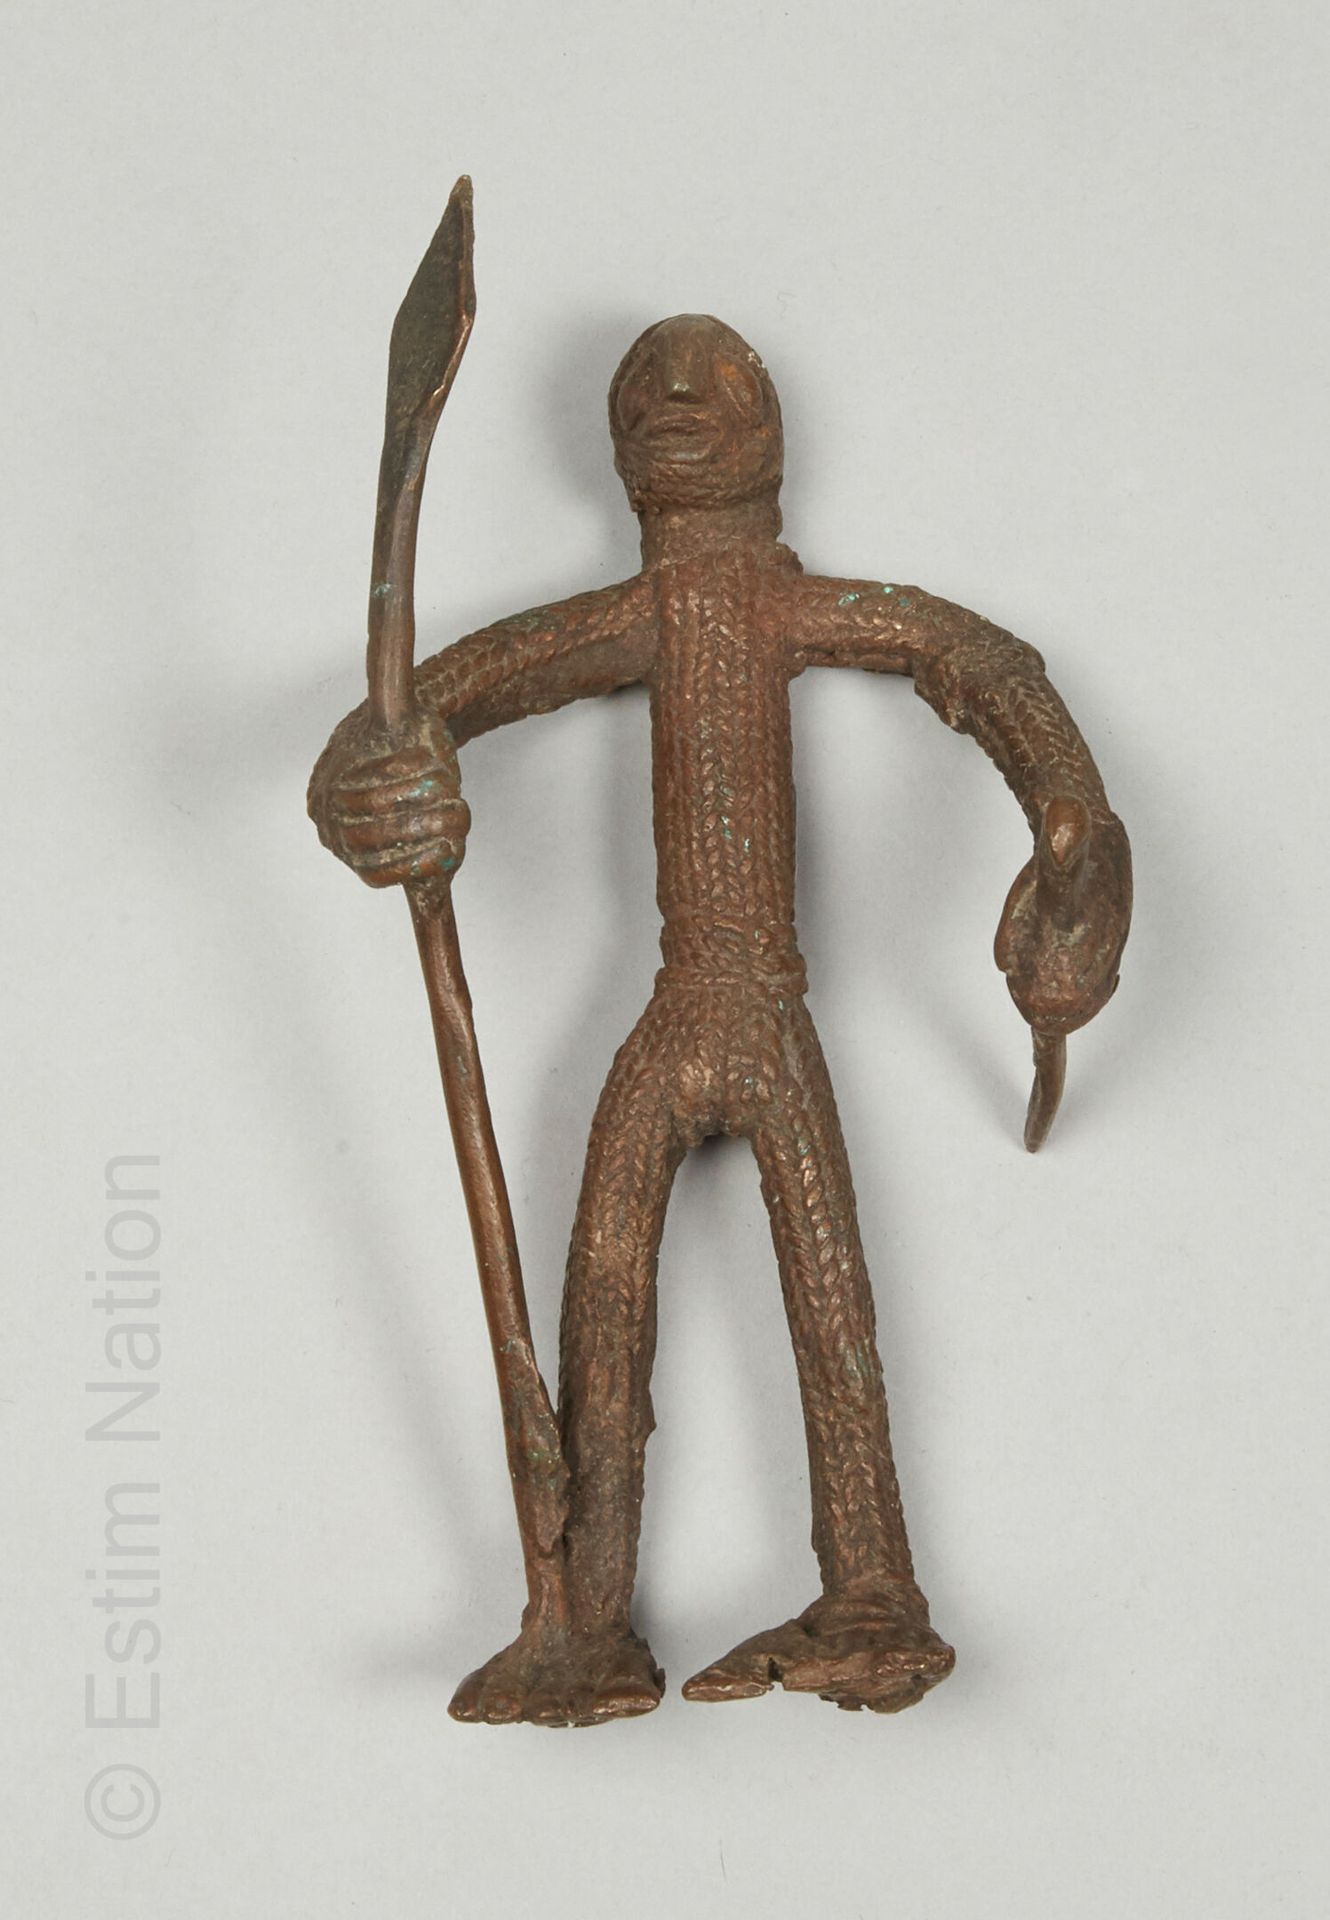 ARTS D'AFRIQUE Statuette de type Gan, Burkina Faso
Alliage de cuivre
H. 18,5 cm
&hellip;